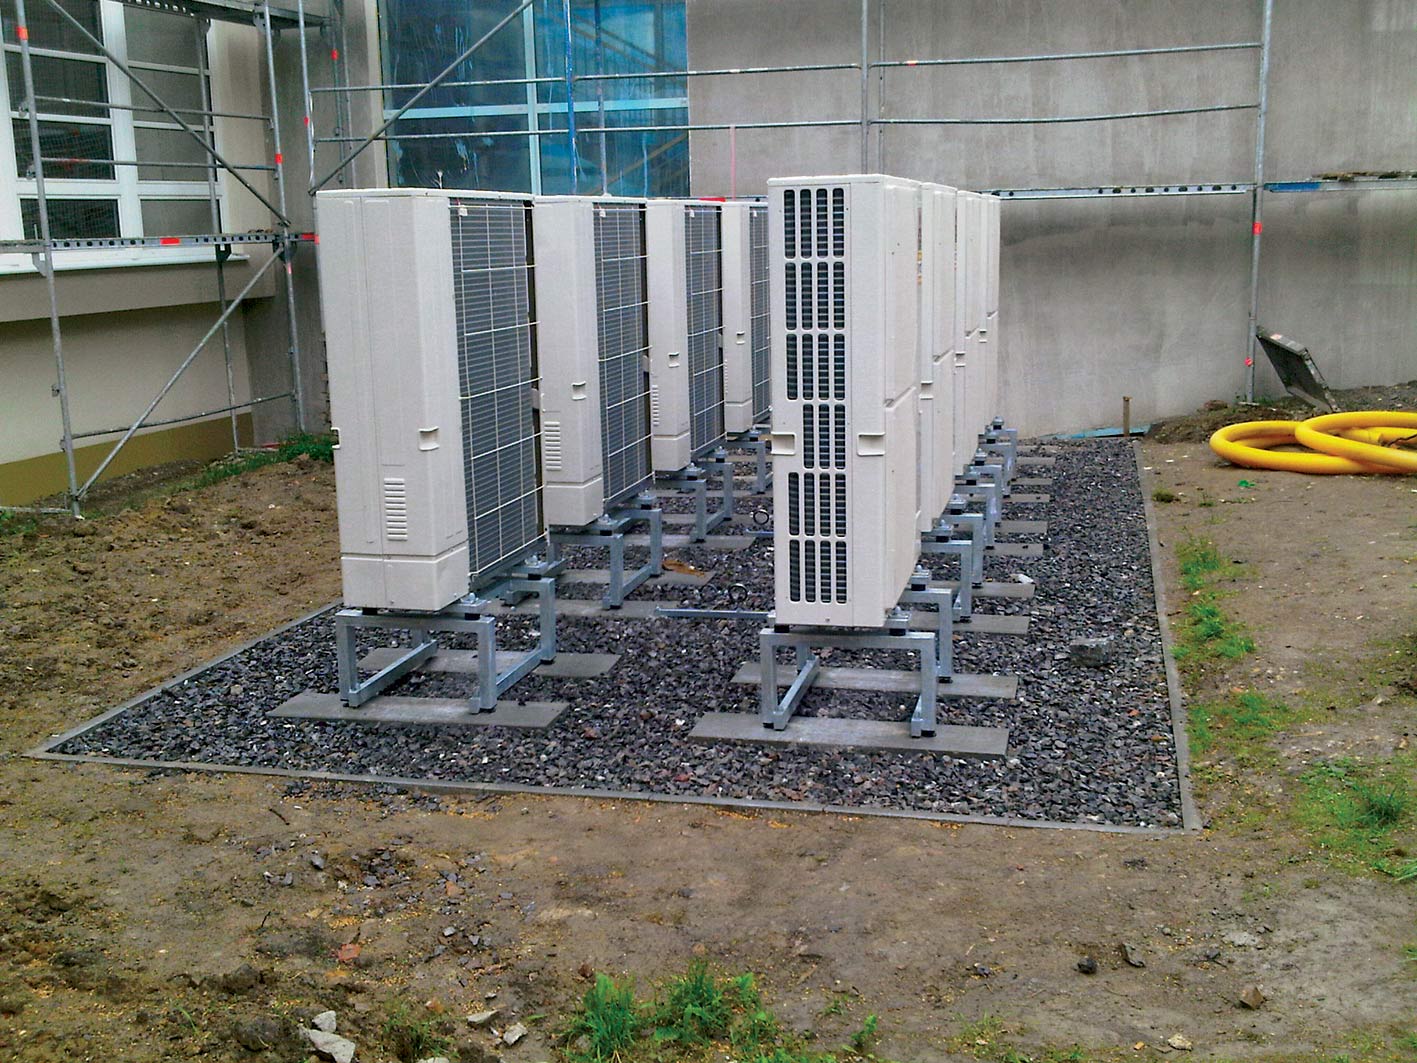 Obr. 3 Kaskáda elektrických tepelných čerpadel vzduch-voda umístěných v předzahrádce bytového domu (foto: AtaxCZ)